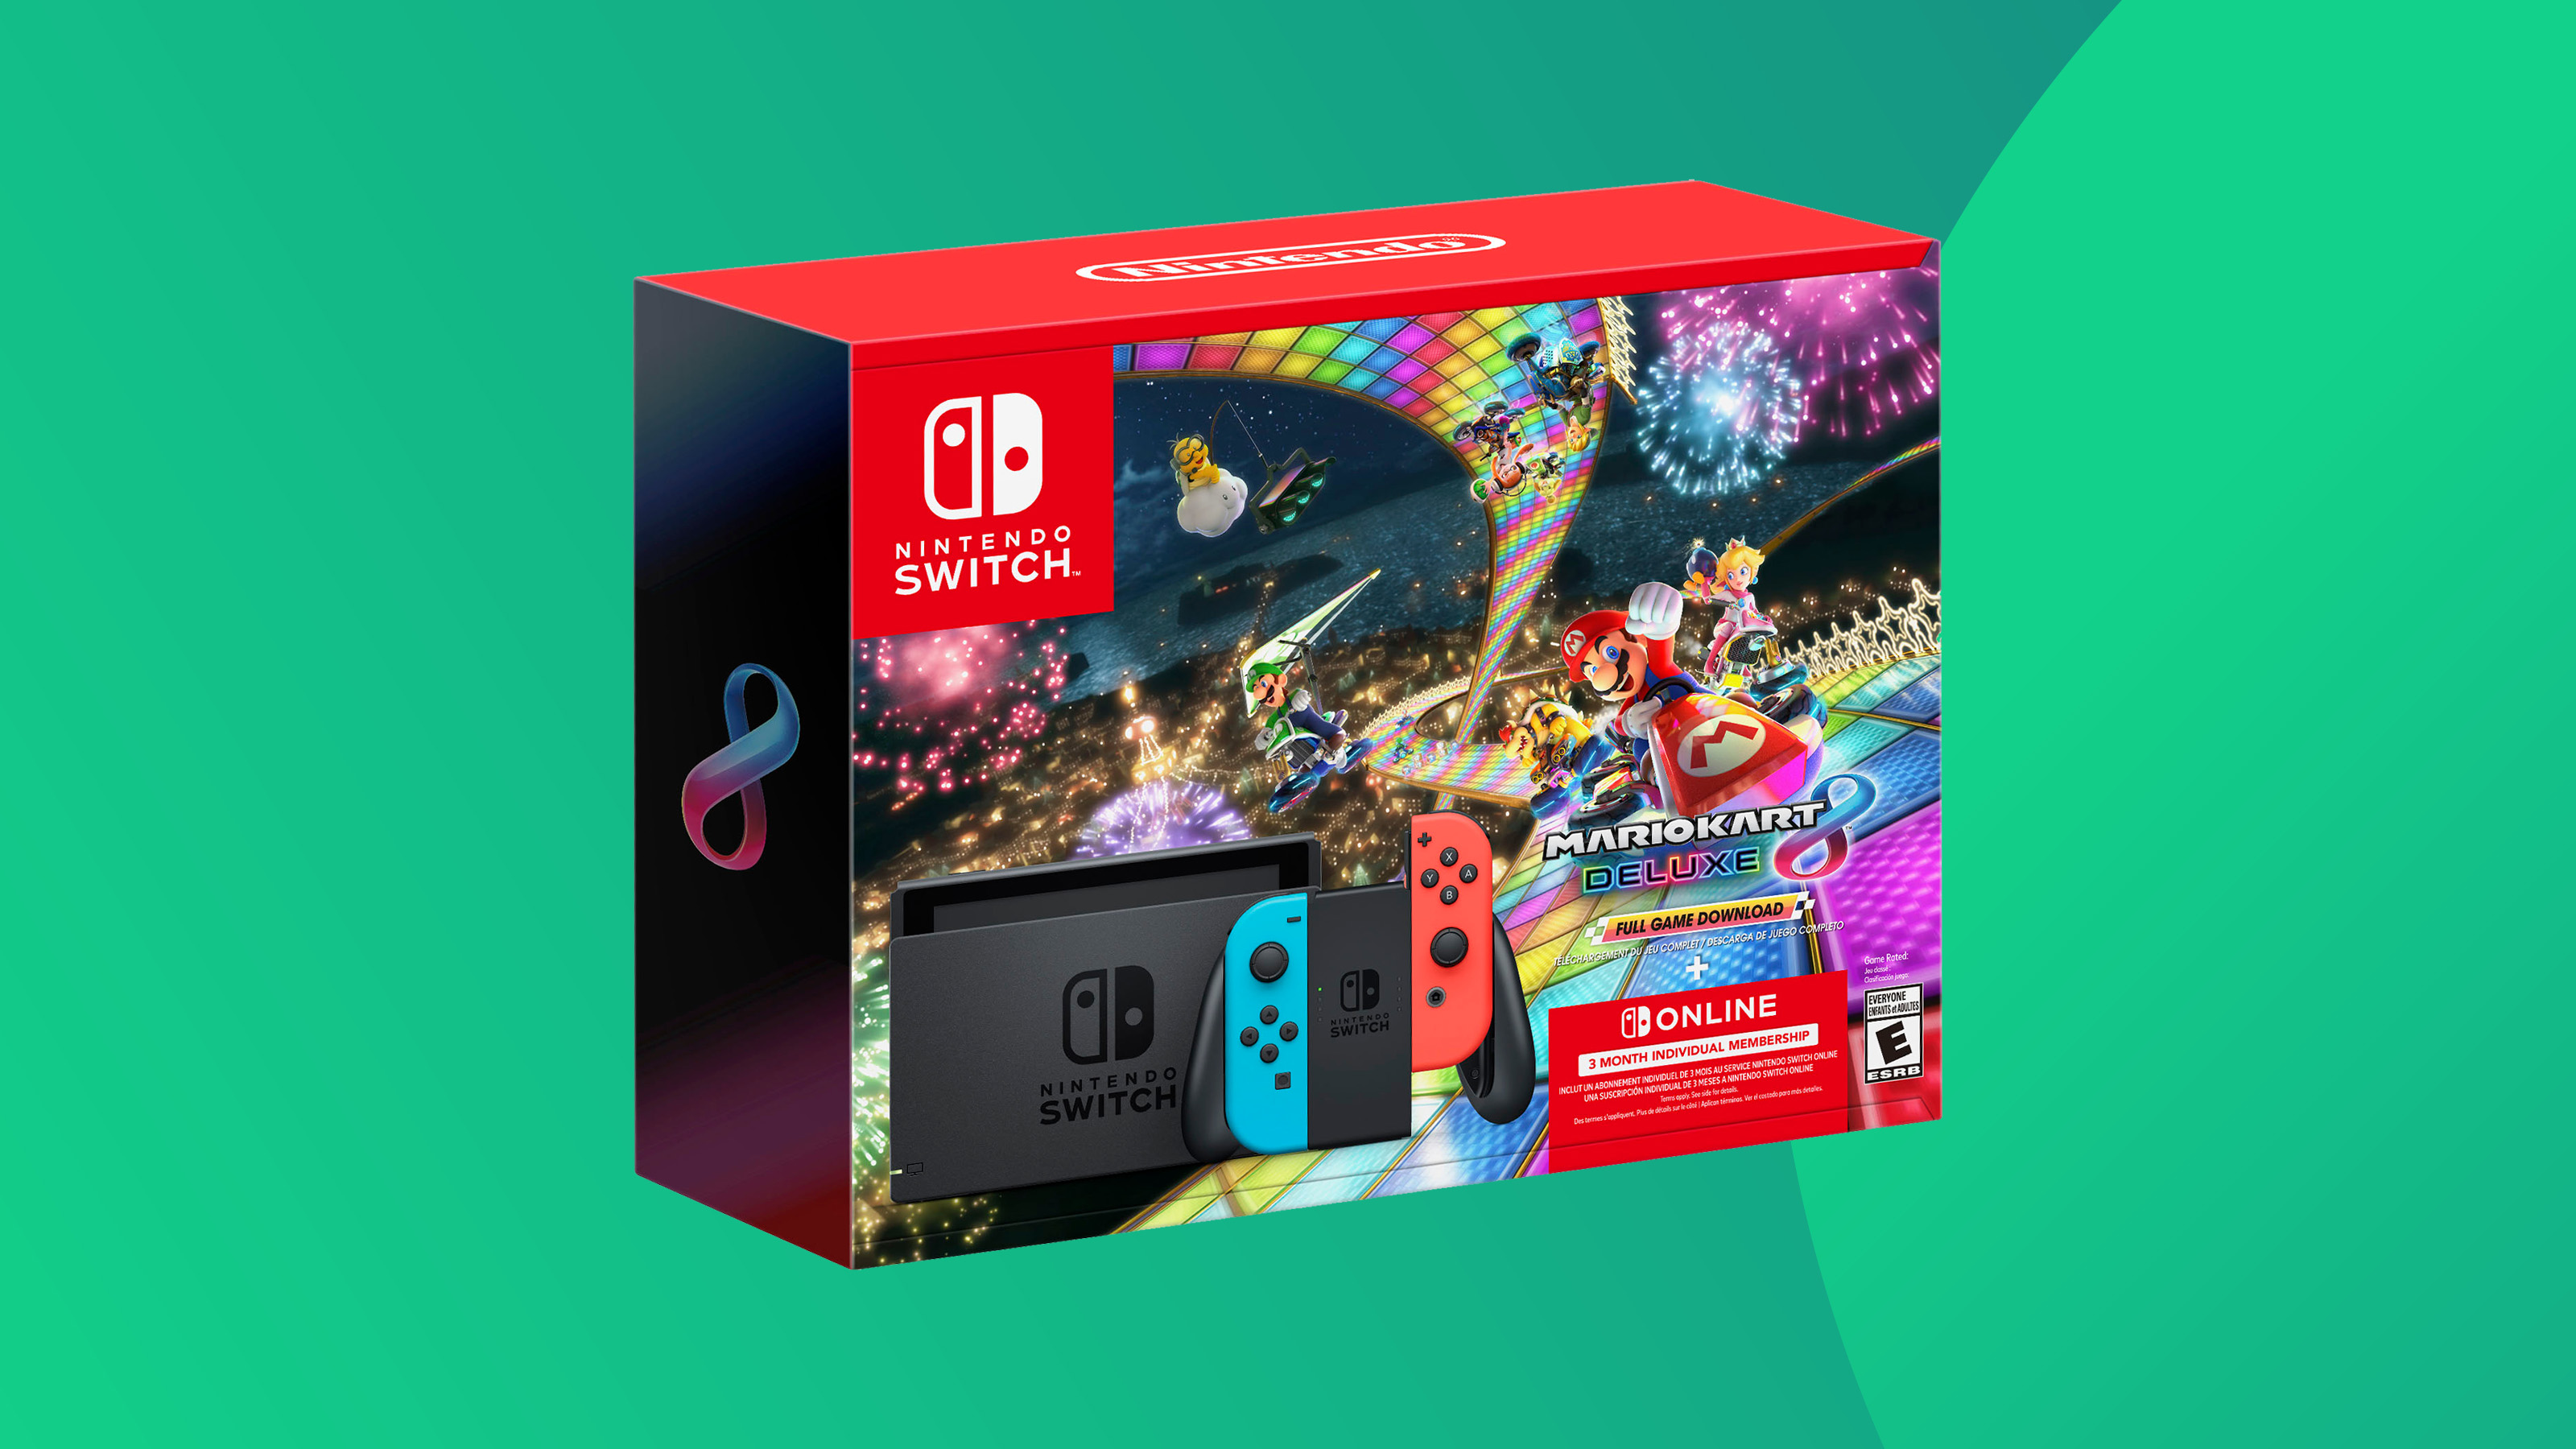 Рекламный снимок комплекта Nintendo Switch.